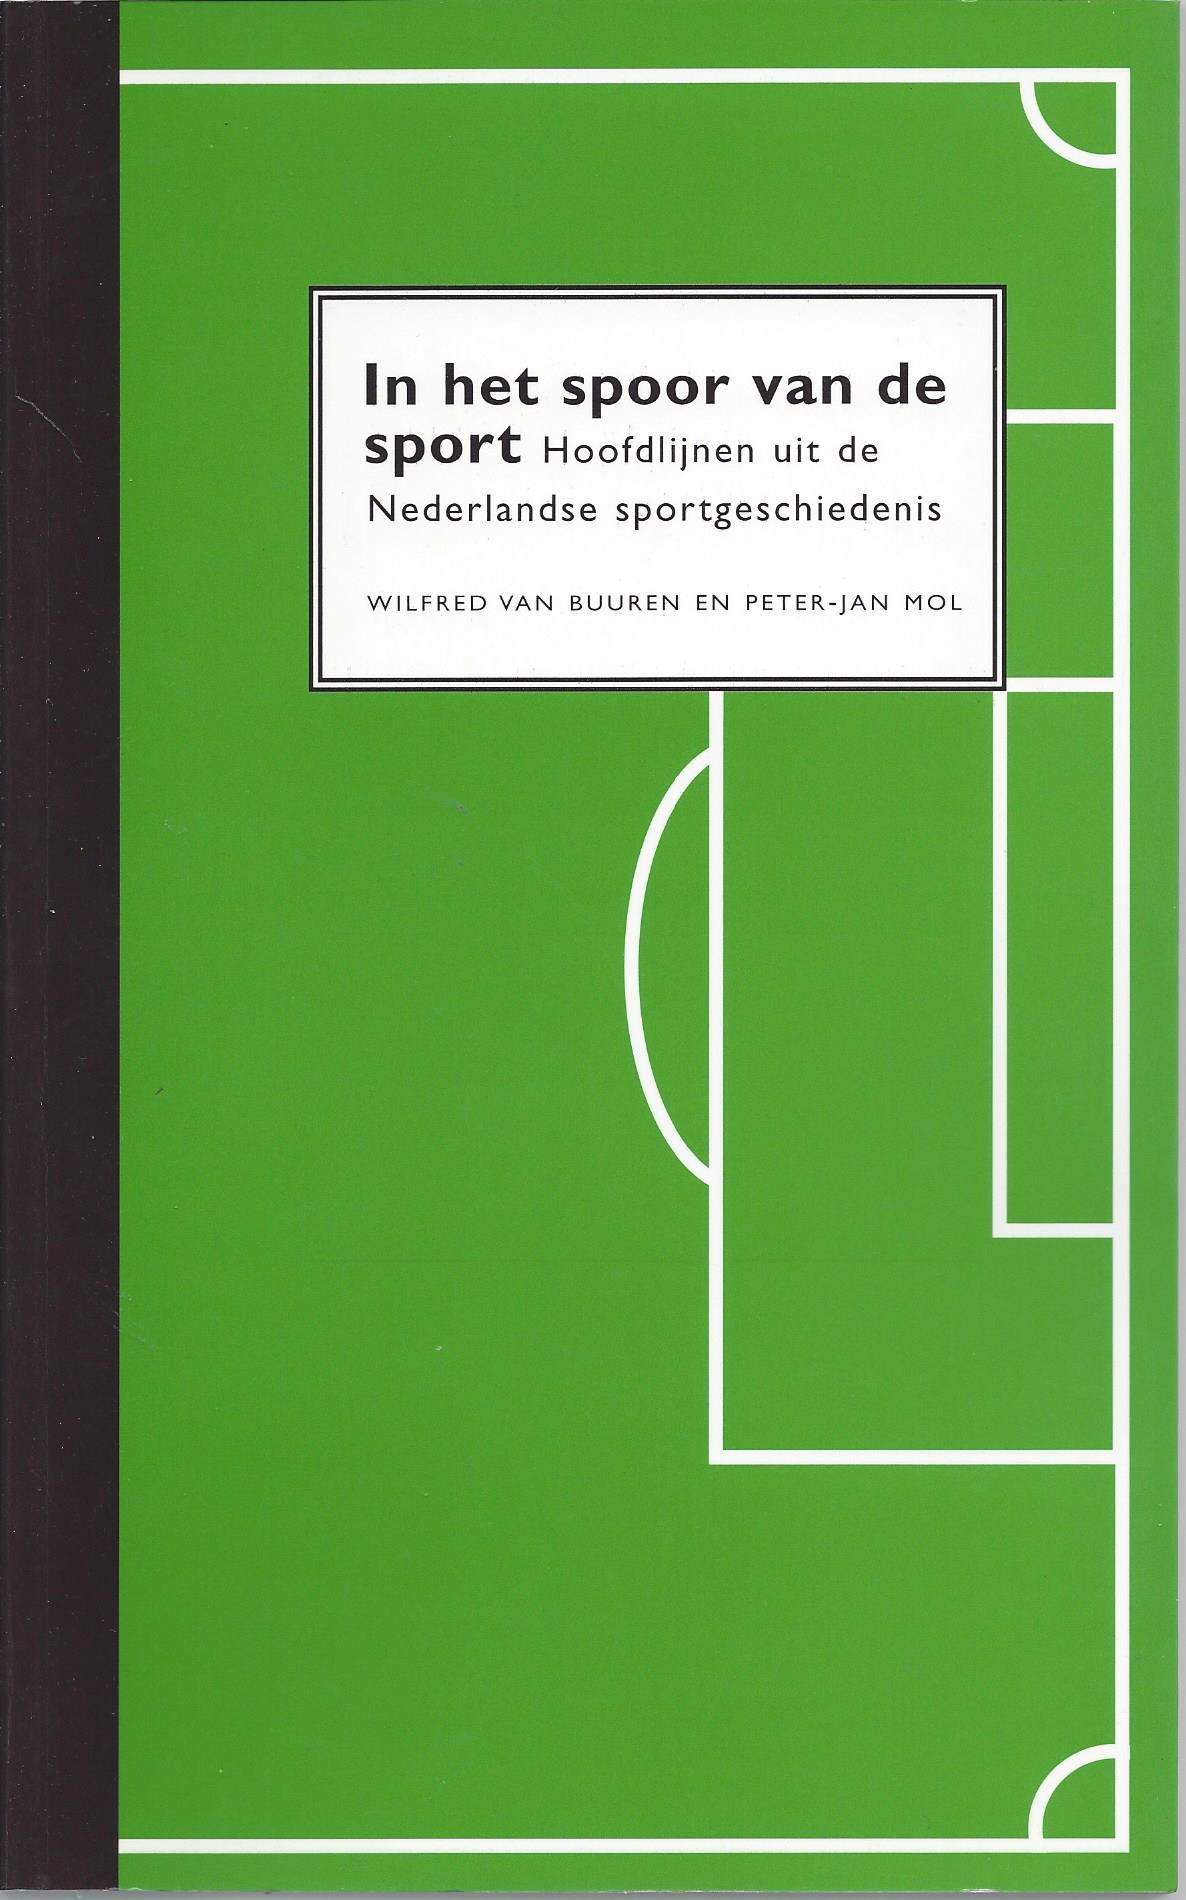 Buuren, Wilfred van en Mol, Peter-Jan - In het spoor van de sport -Hoofdlijnen uit de Nederlandse sportgeschiedenis